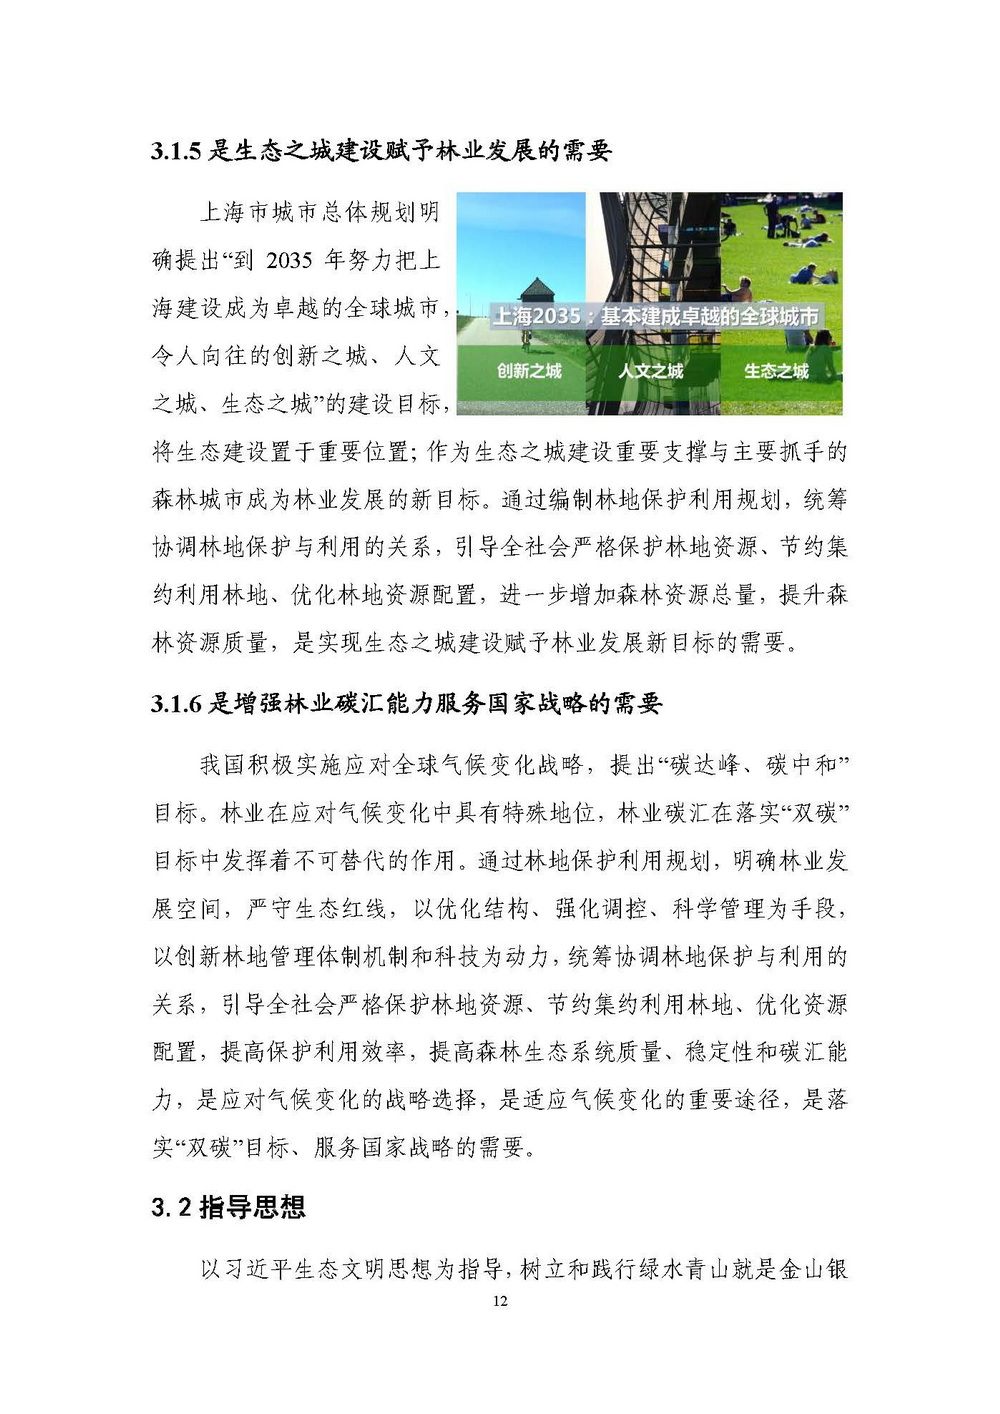 上海市森林和林地保护利用规划文本 公开稿 附图_页面_15.jpg